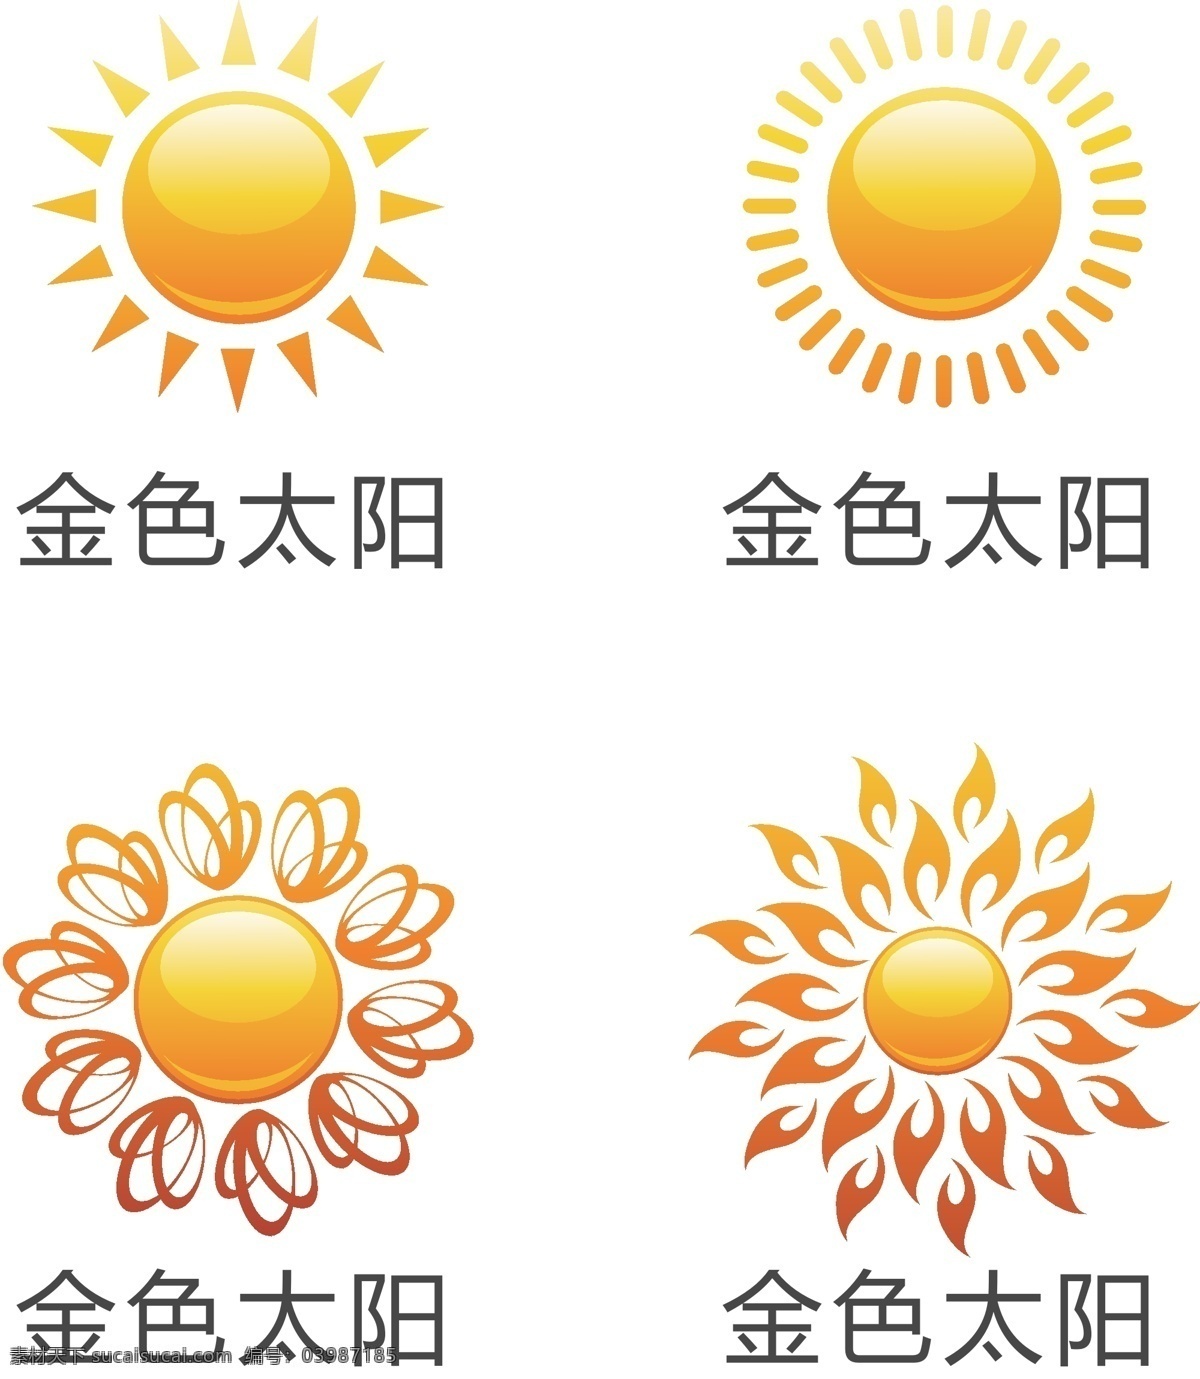 太阳1 太阳 金色太阳 创意太阳 太阳图案 太阳设计 发光太阳 金黄色太阳 卡通太阳